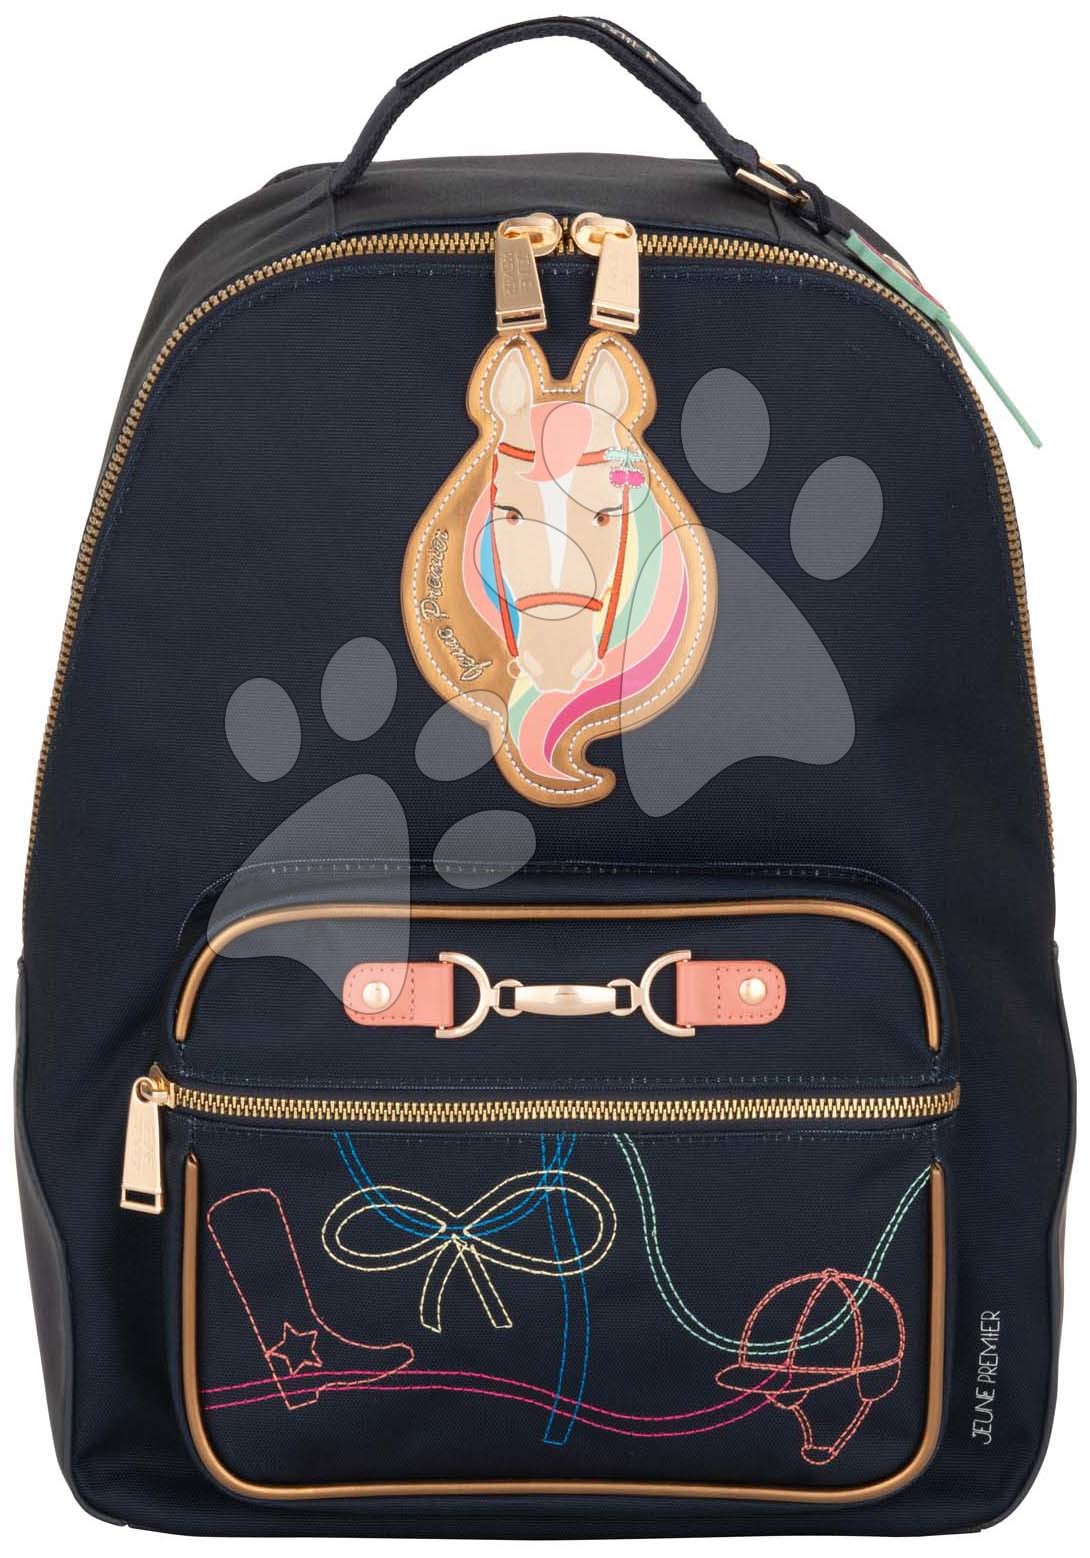 Školské tašky a batohy - Školská taška batoh Backpack Bobbie Cavalier Couture Jeune Premier ergonomický luxusné prevedenie 41*30 cm